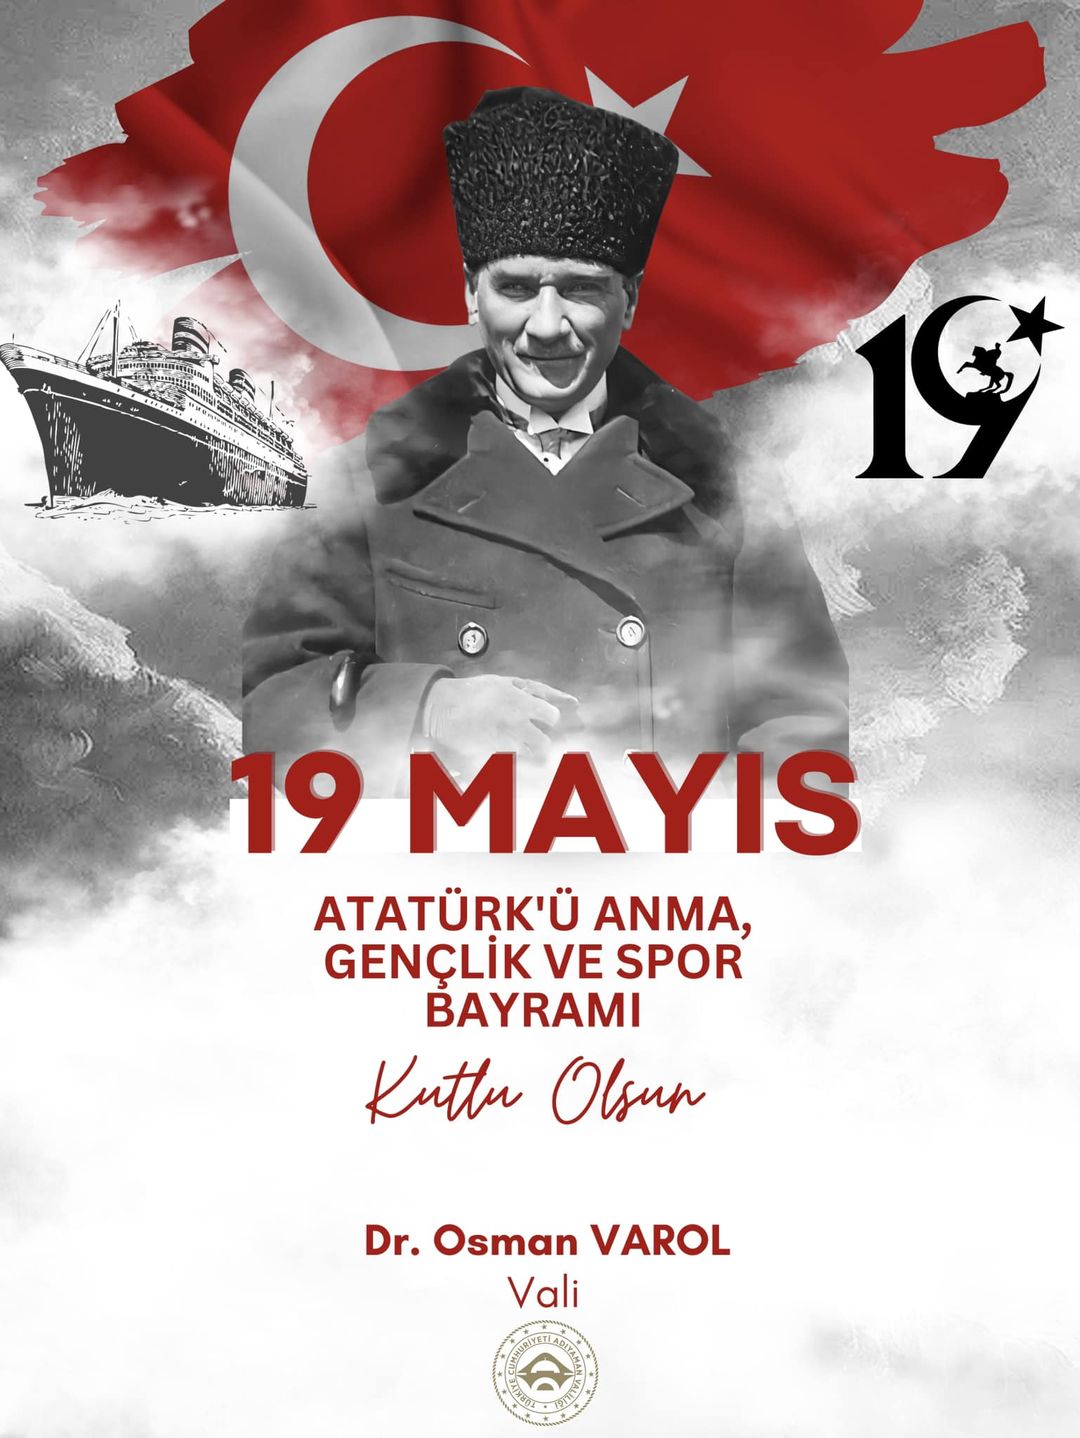 Adıyaman Valisi Dr. Osman Varol, 19 Mayıs Atatürk'ü Anma, Gençlik ve Spor Bayramı dolayısıyla bir mesaj yayımladı.